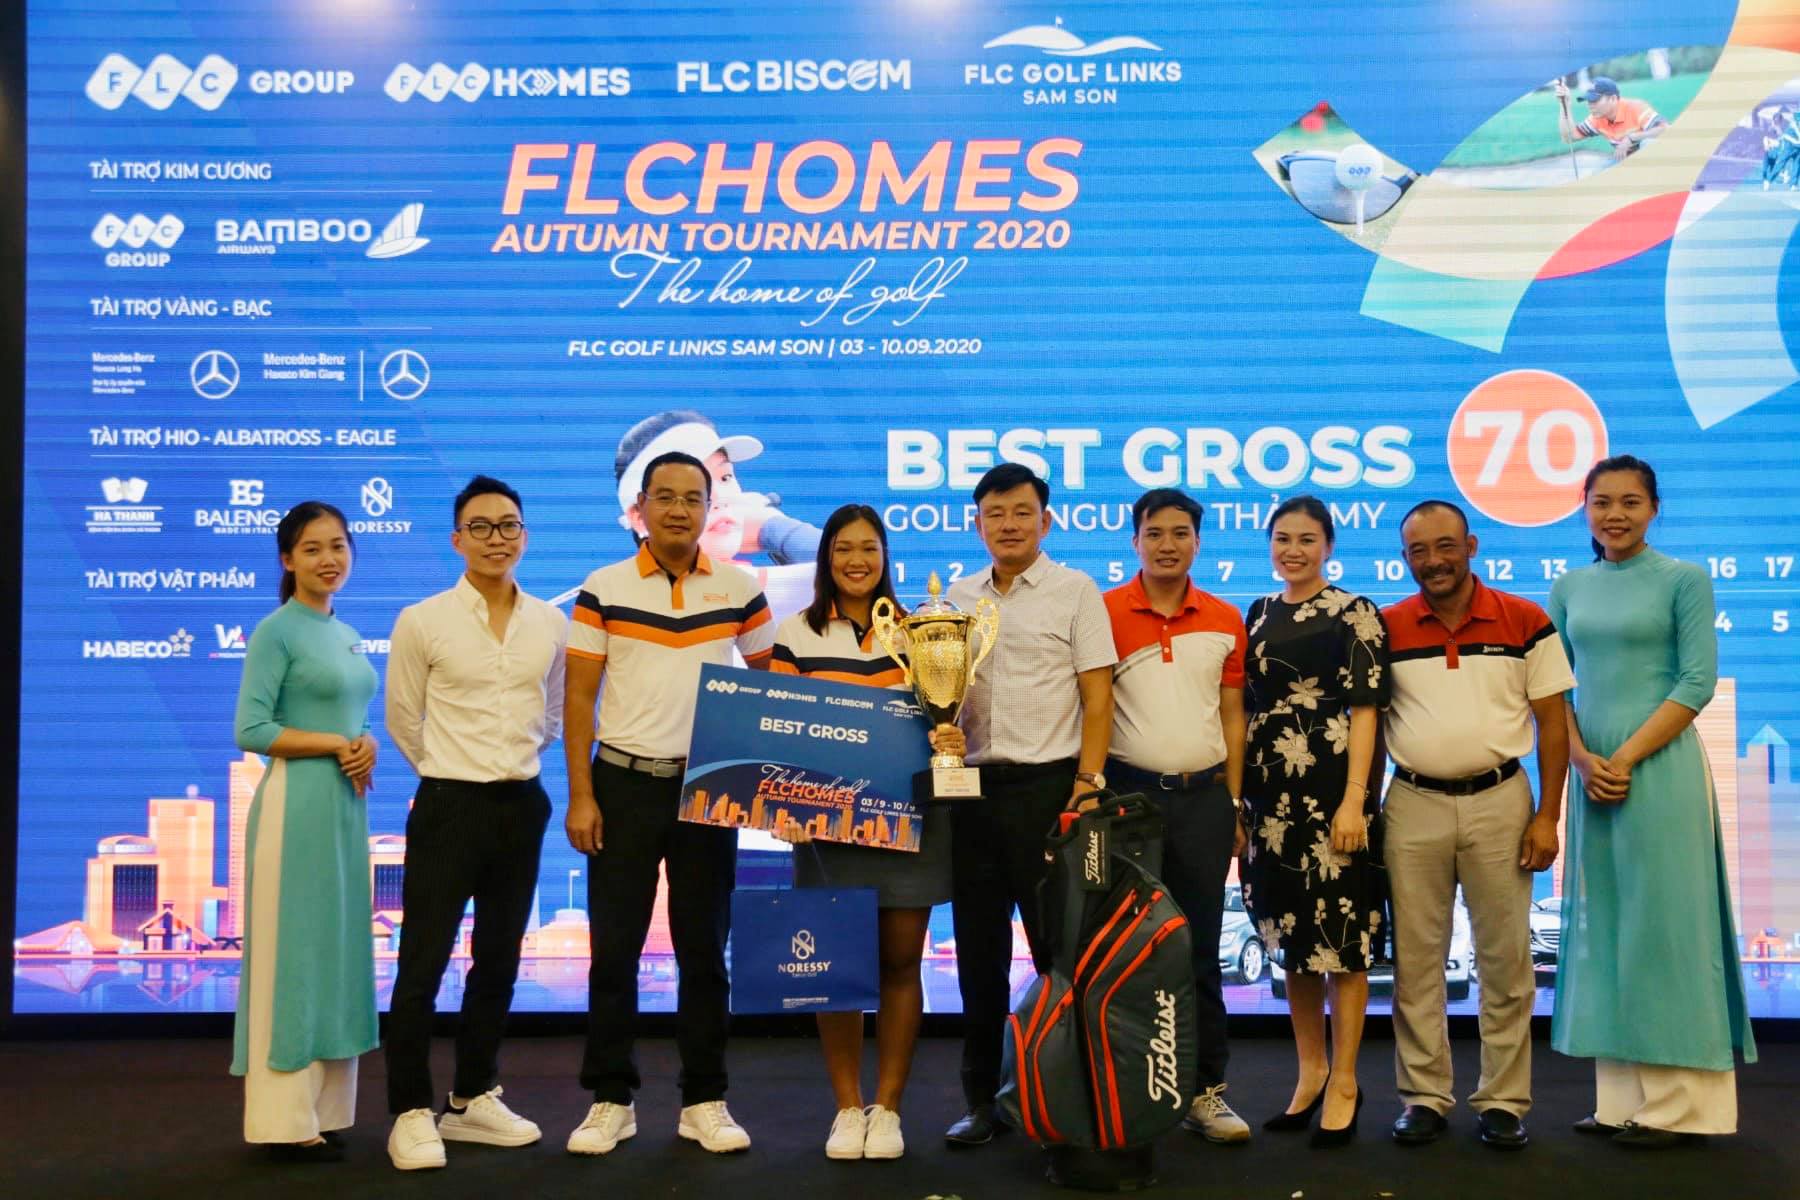 Nguyễn Thảo My vô địch giải golf FLCHomes Autumn Tournament 2020